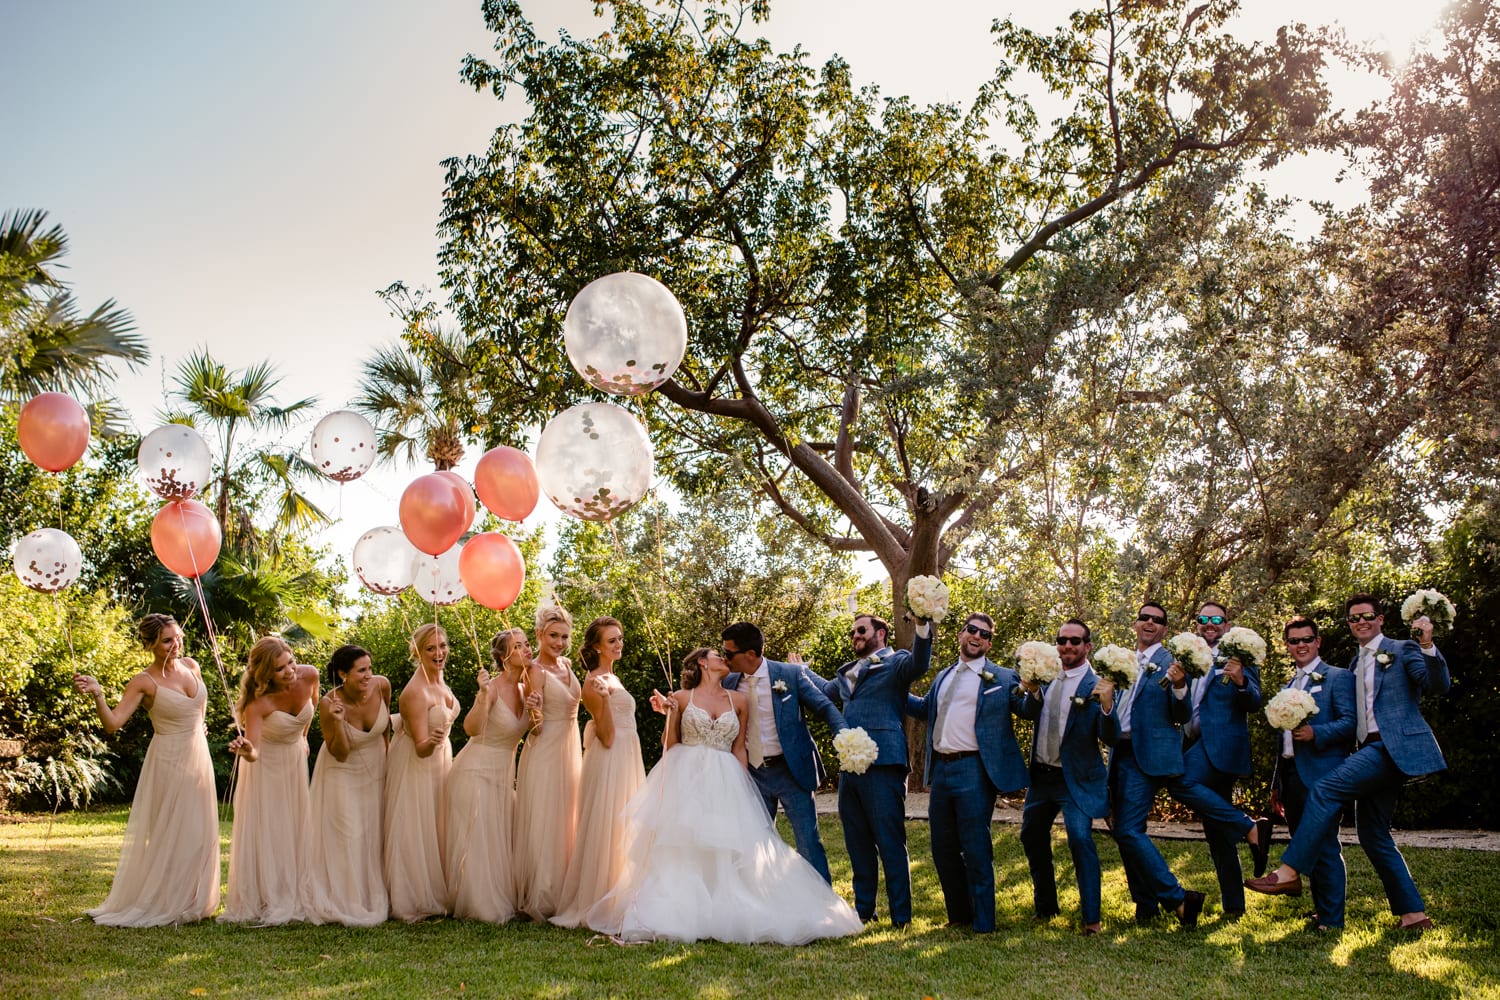 A group of bridesmaids and groomsmen holding balloons at a Casa Marina wedding.